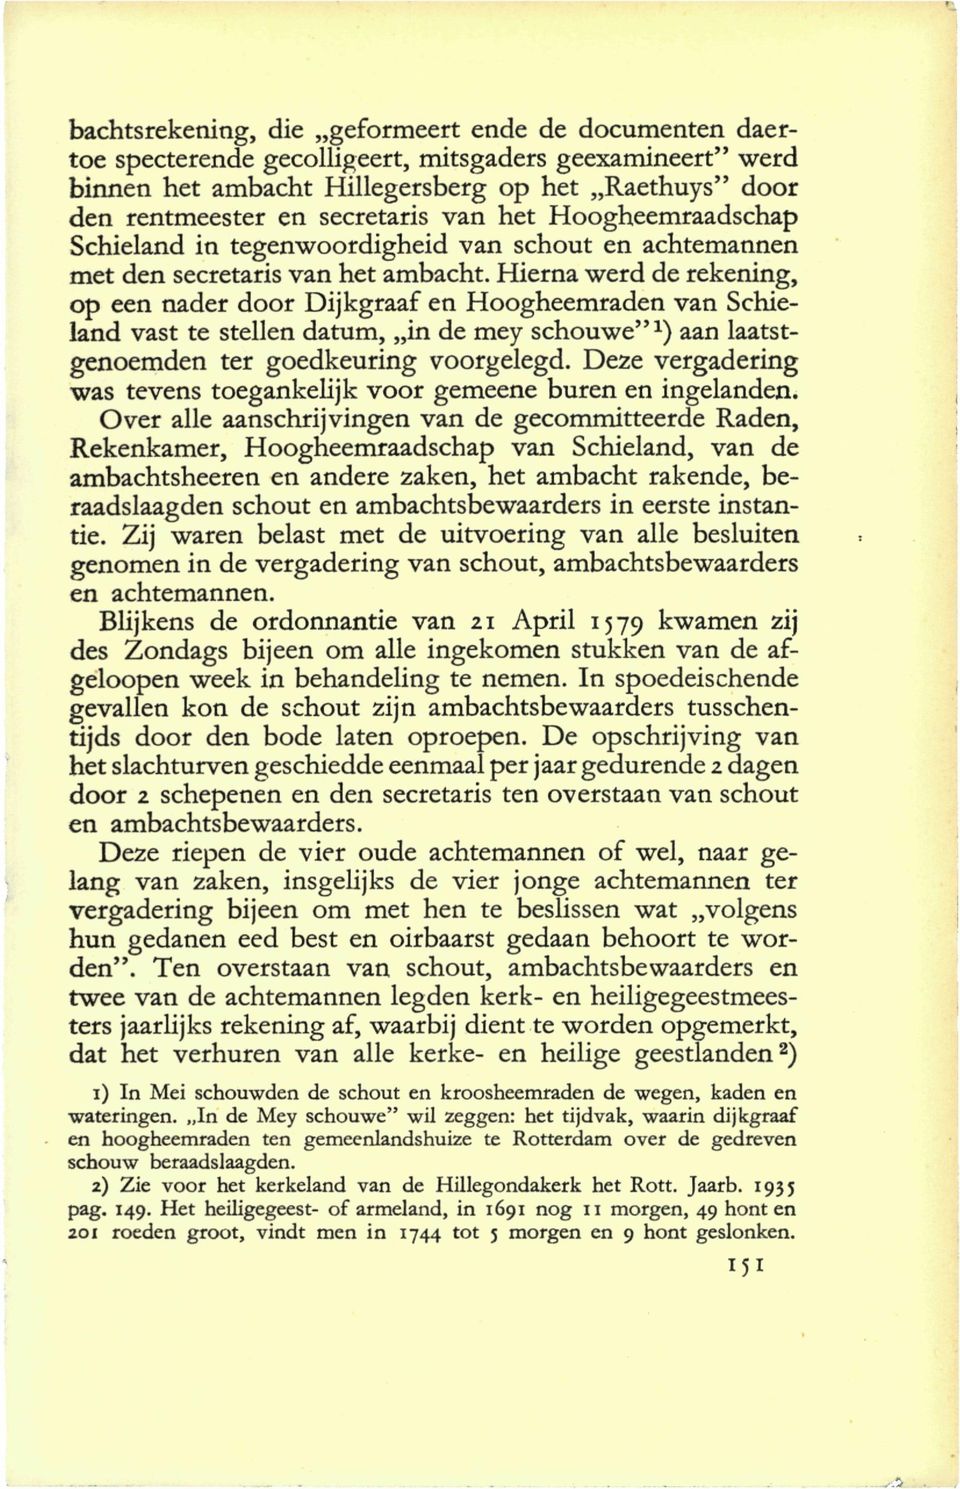 Hierna werd de rekening, op een nader door Dijkgraaf en Hoogheemraden van Schieland vast te stellen datum, in de mey schouwe"*) aan laatstgenoemden ter goedkeuring voorgelegd.